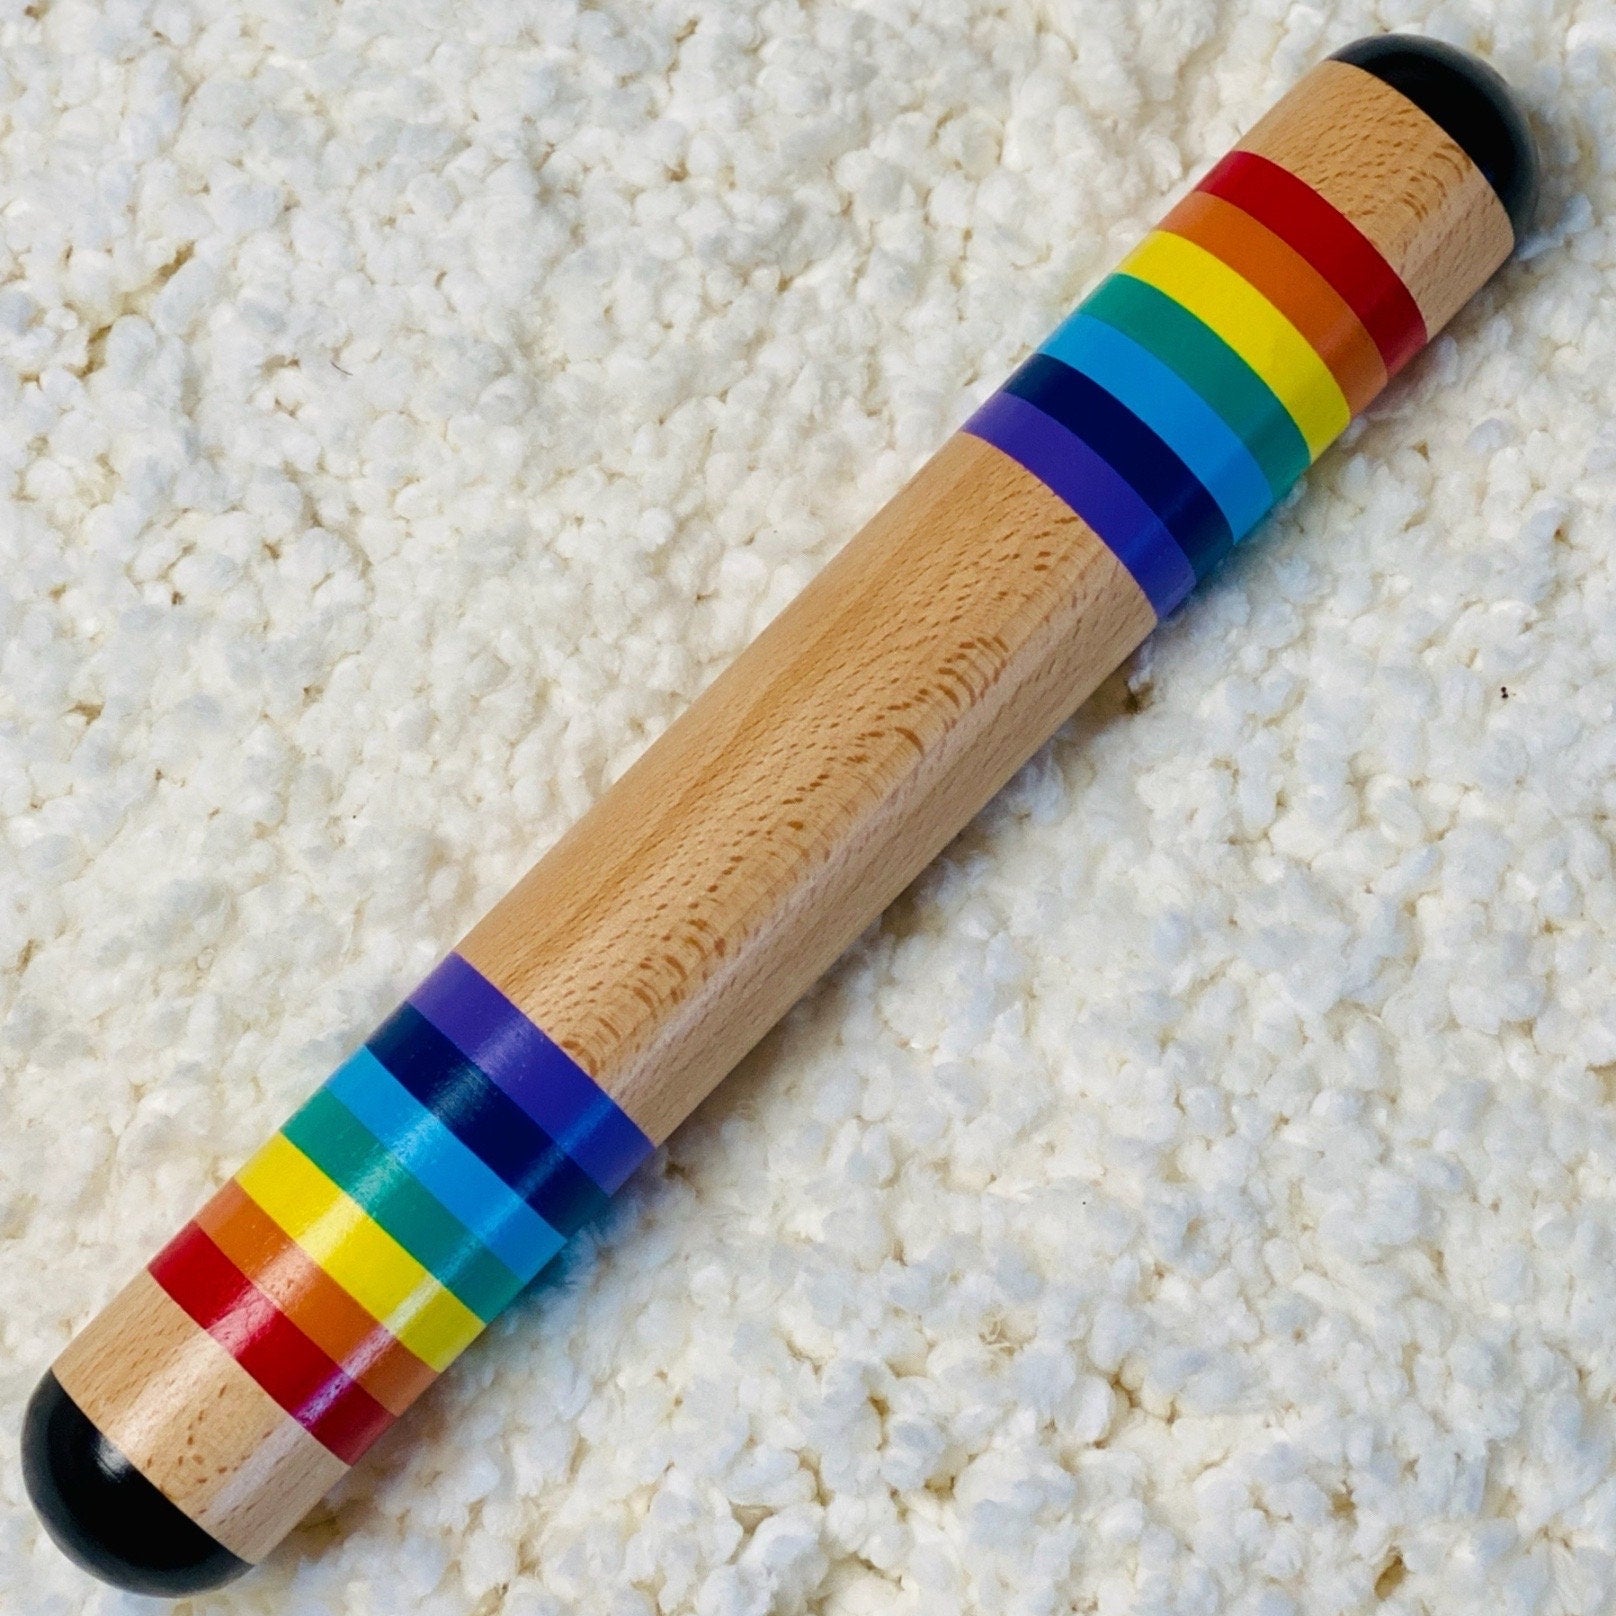 Rainbow Wooden Rainmaker, Wooden Shaker